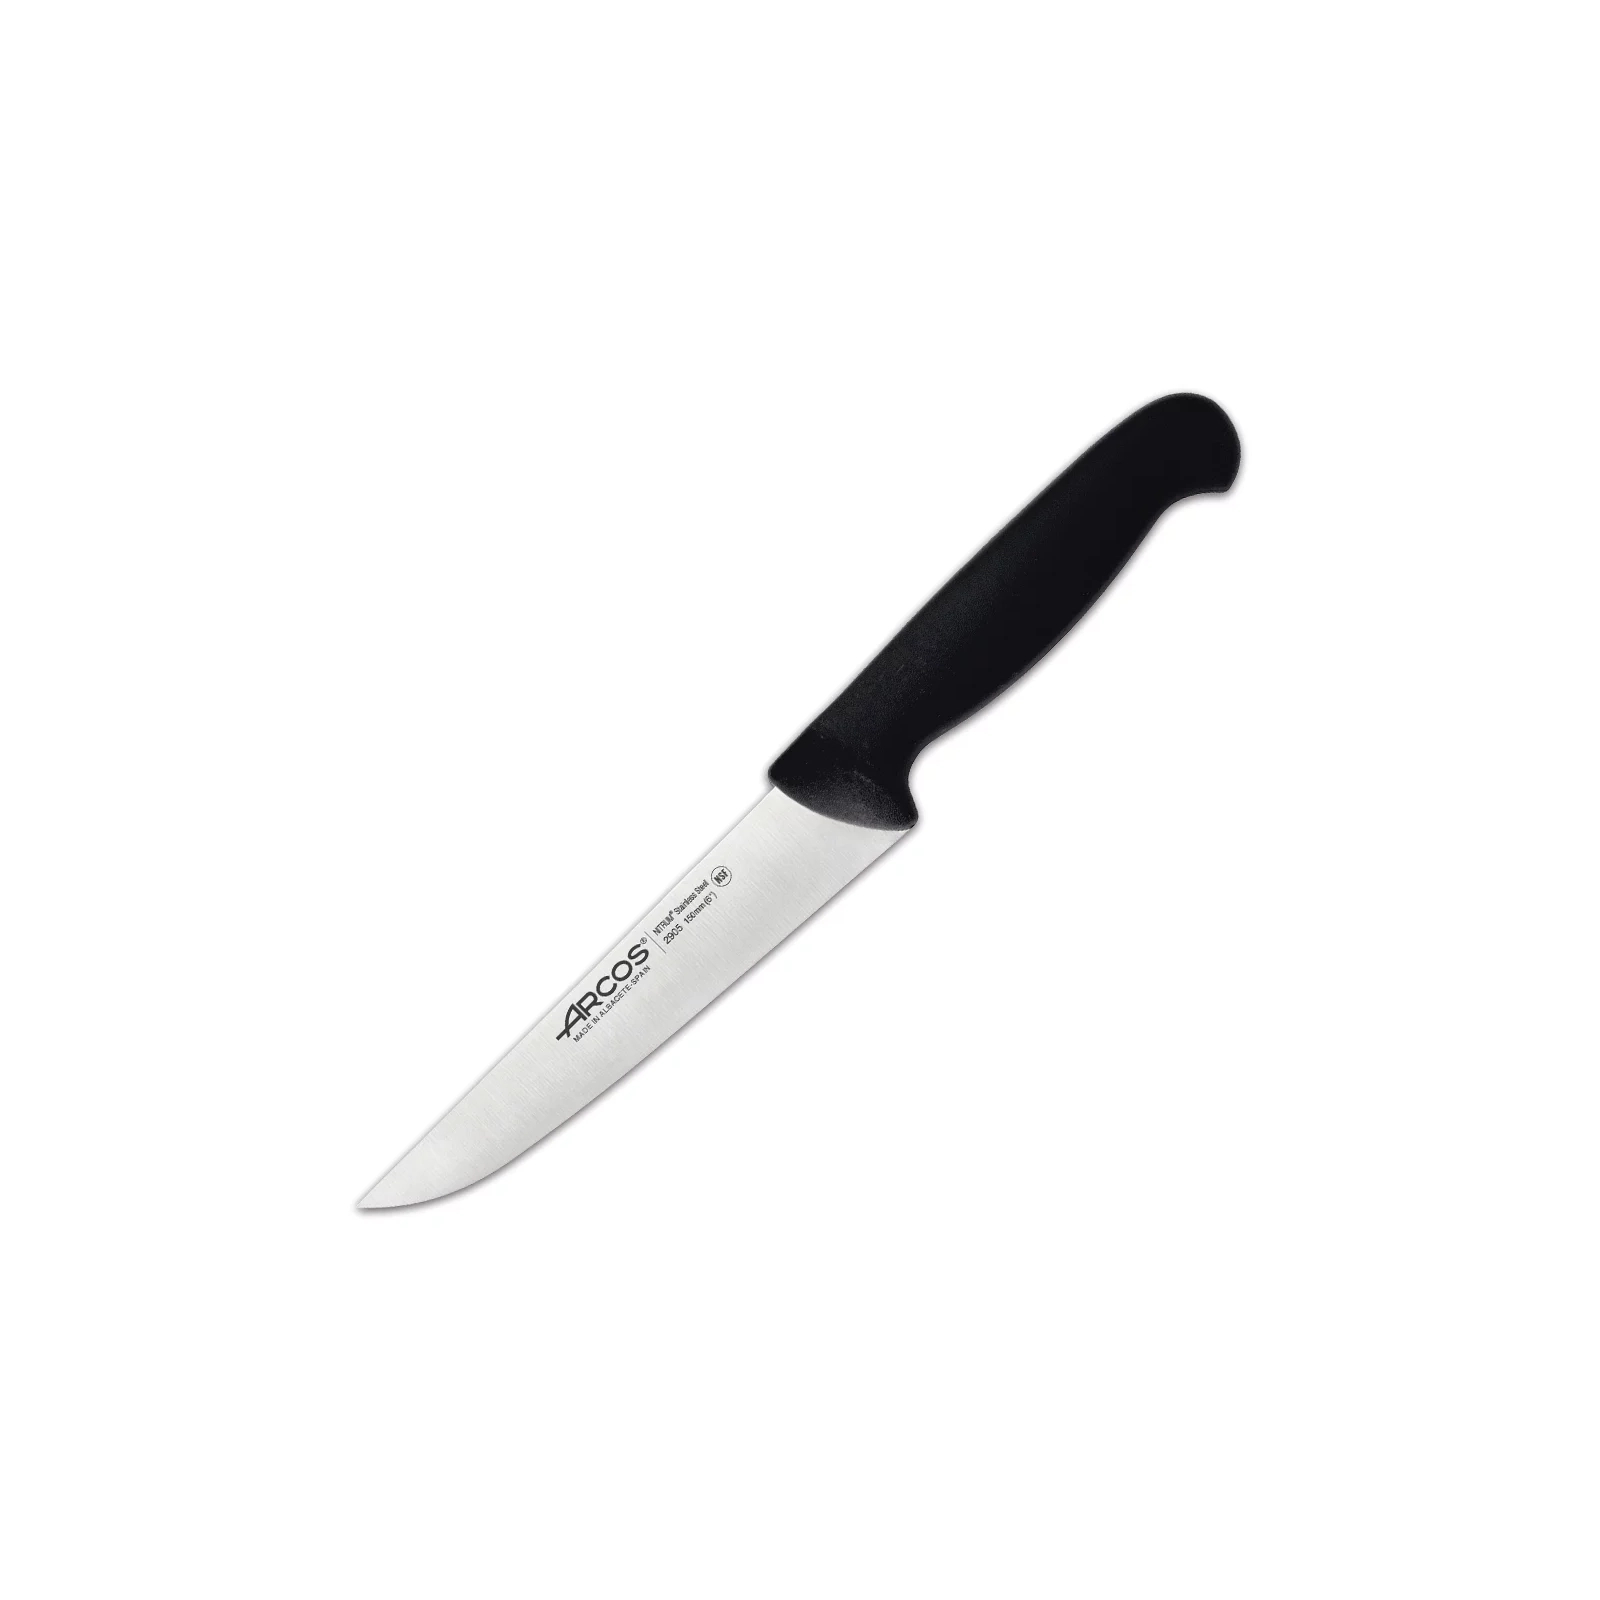 Кухонный нож Arcos серія "2900" 150 мм Червоний (292022)